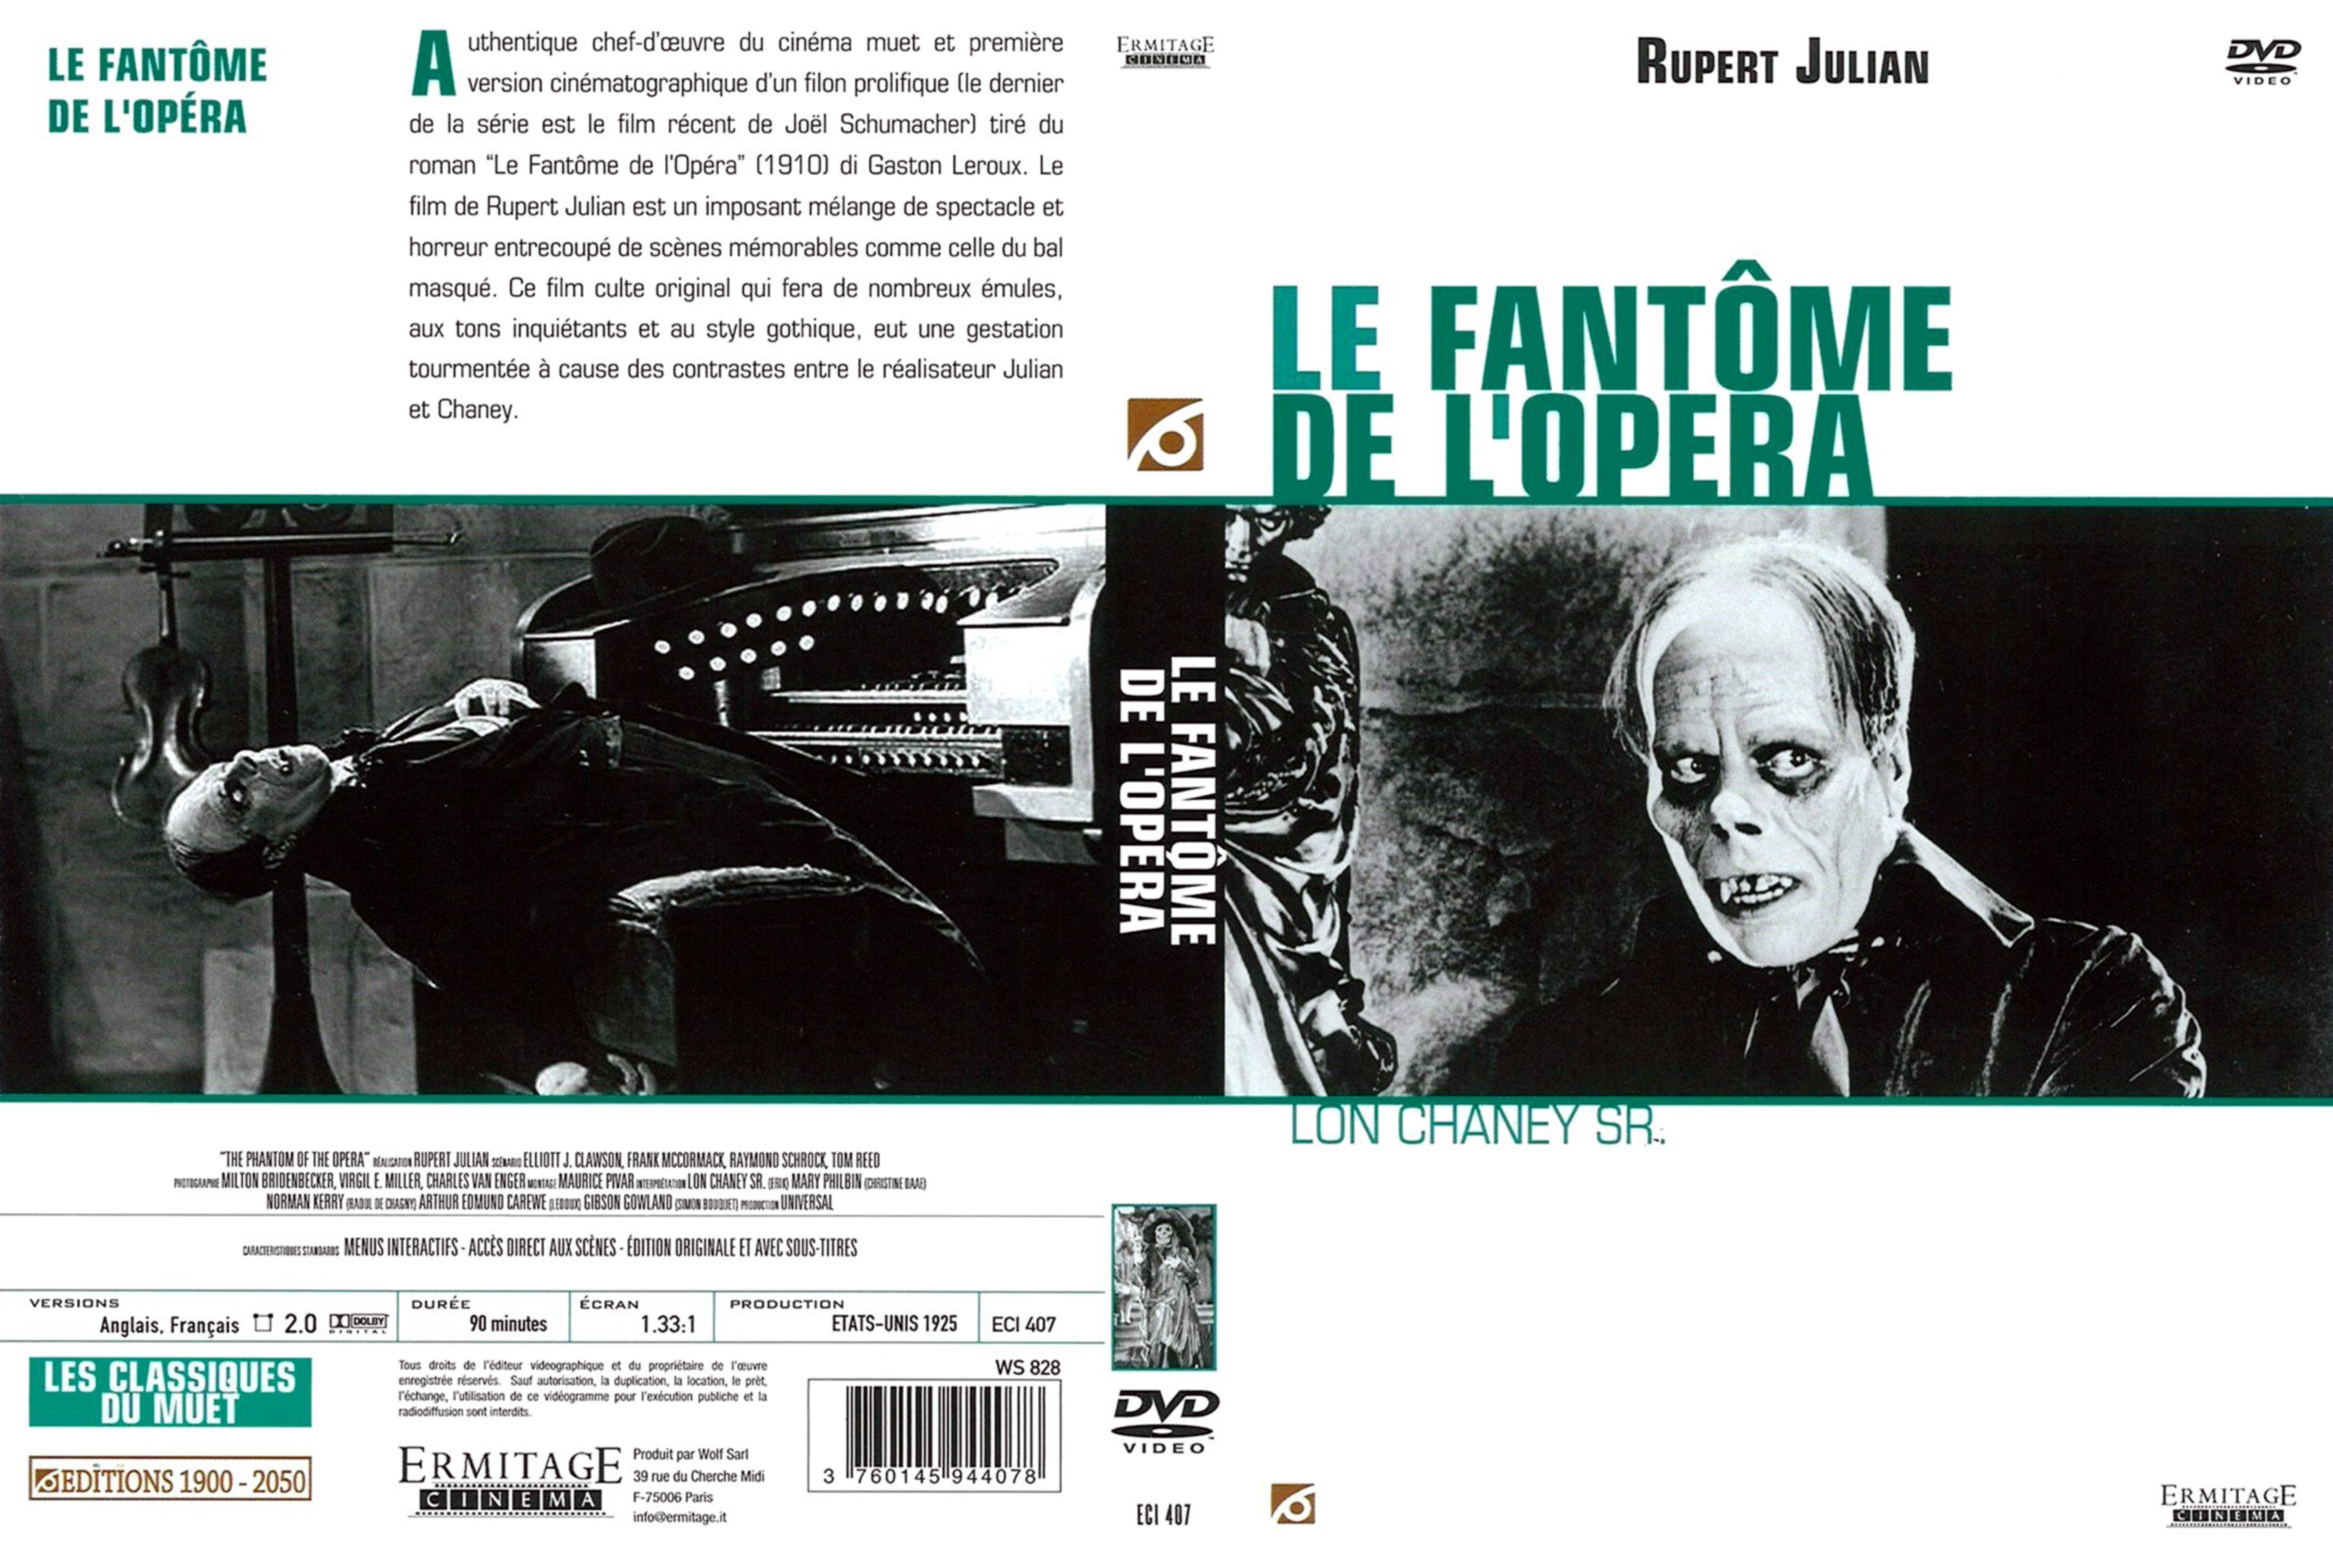 Jaquette DVD Le fantome de l